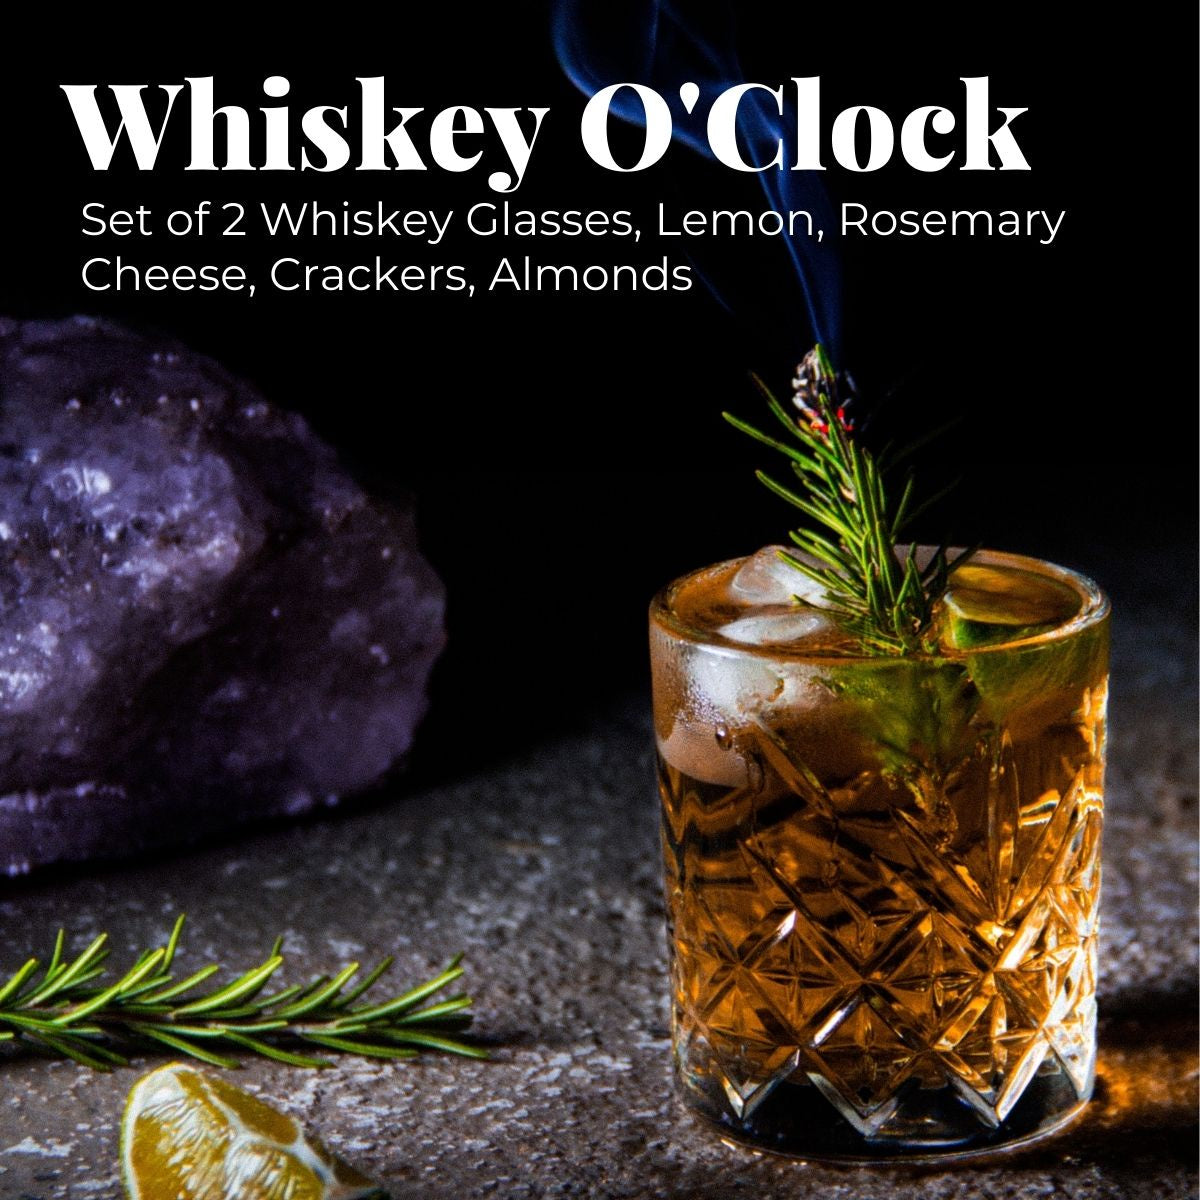 Whisky O'Clock